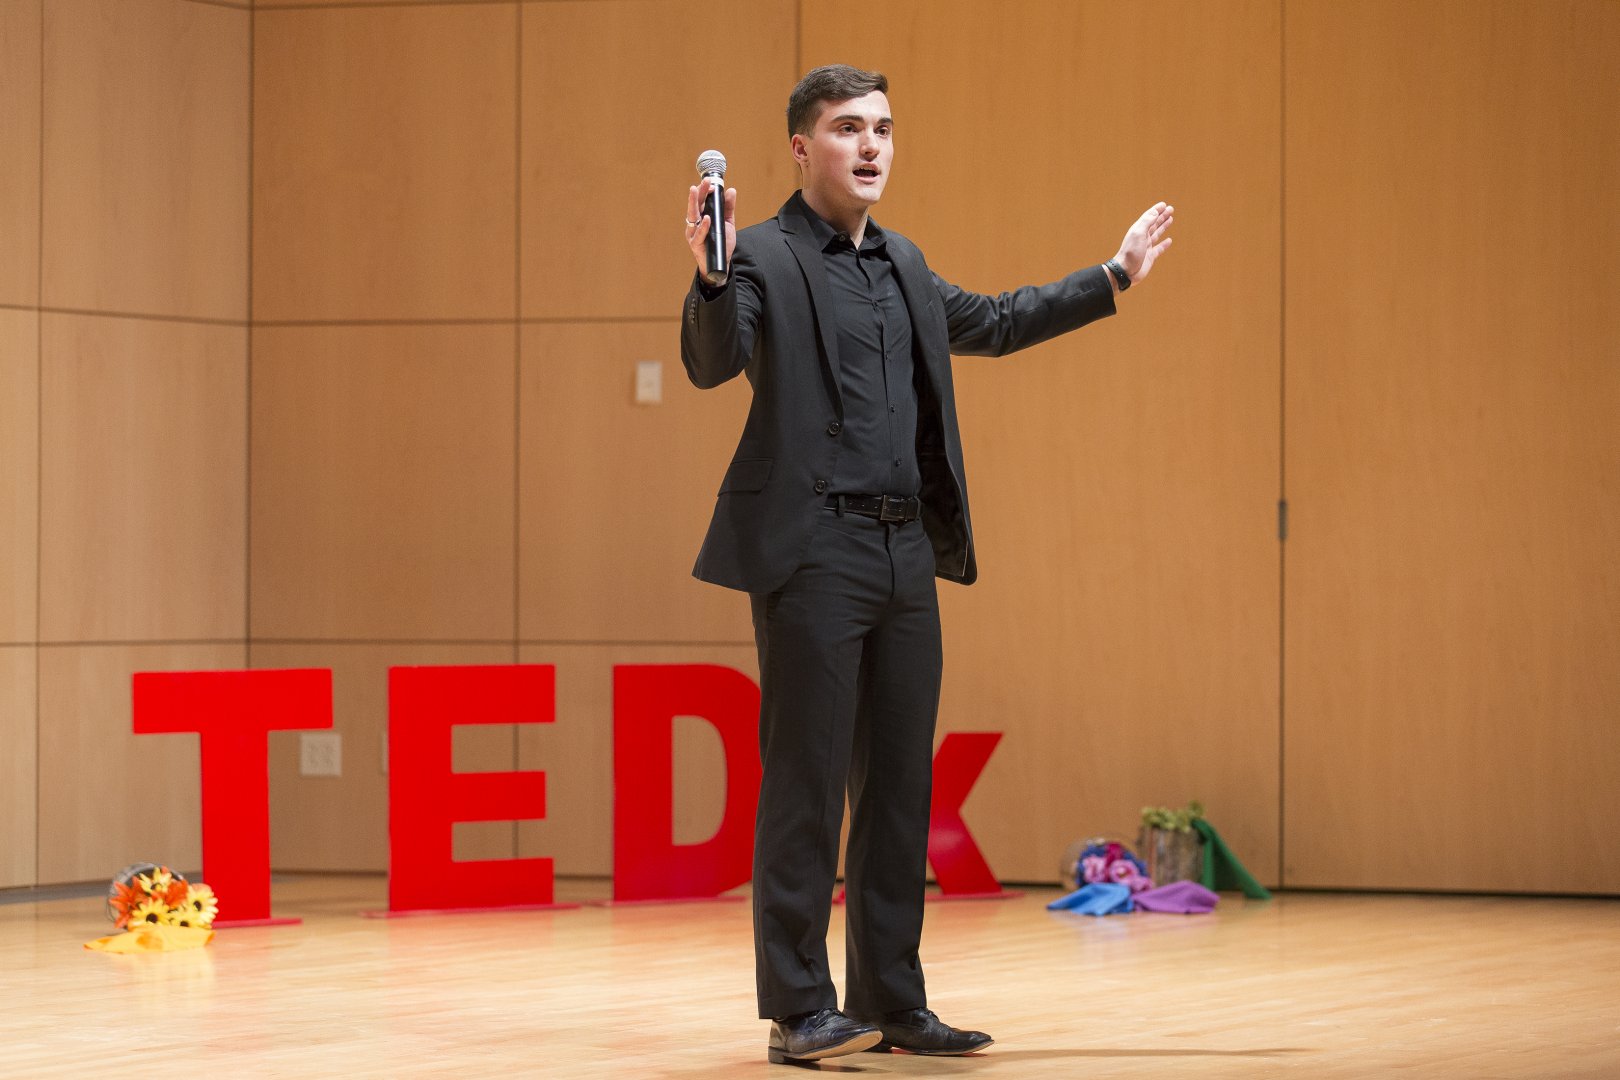 TEDx speaker